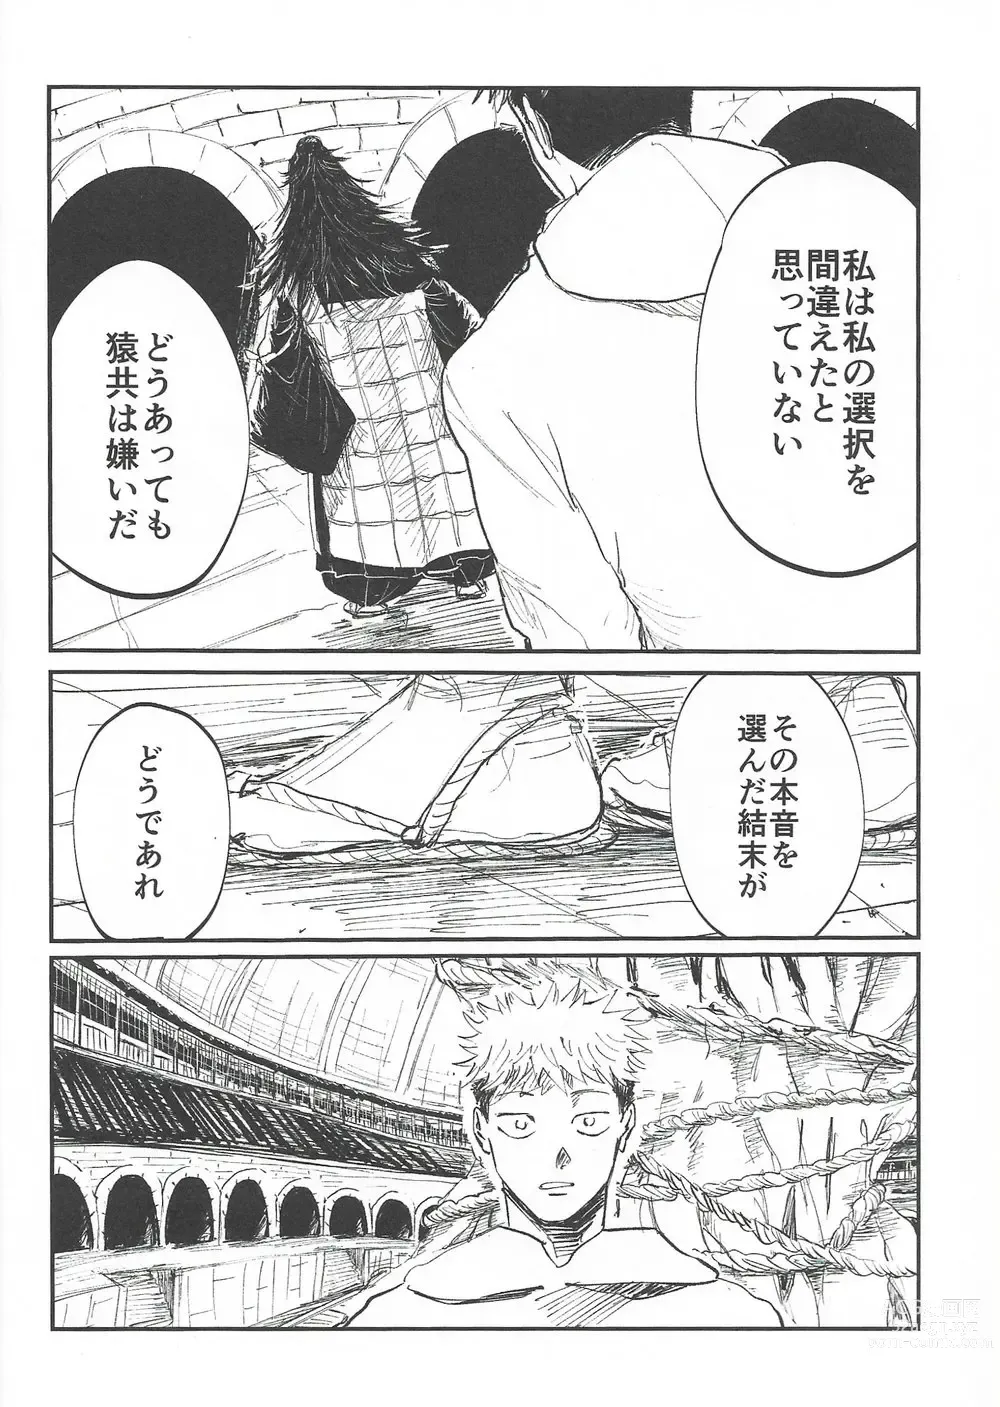 Page 9 of doujinshi Rakuen no Niwa